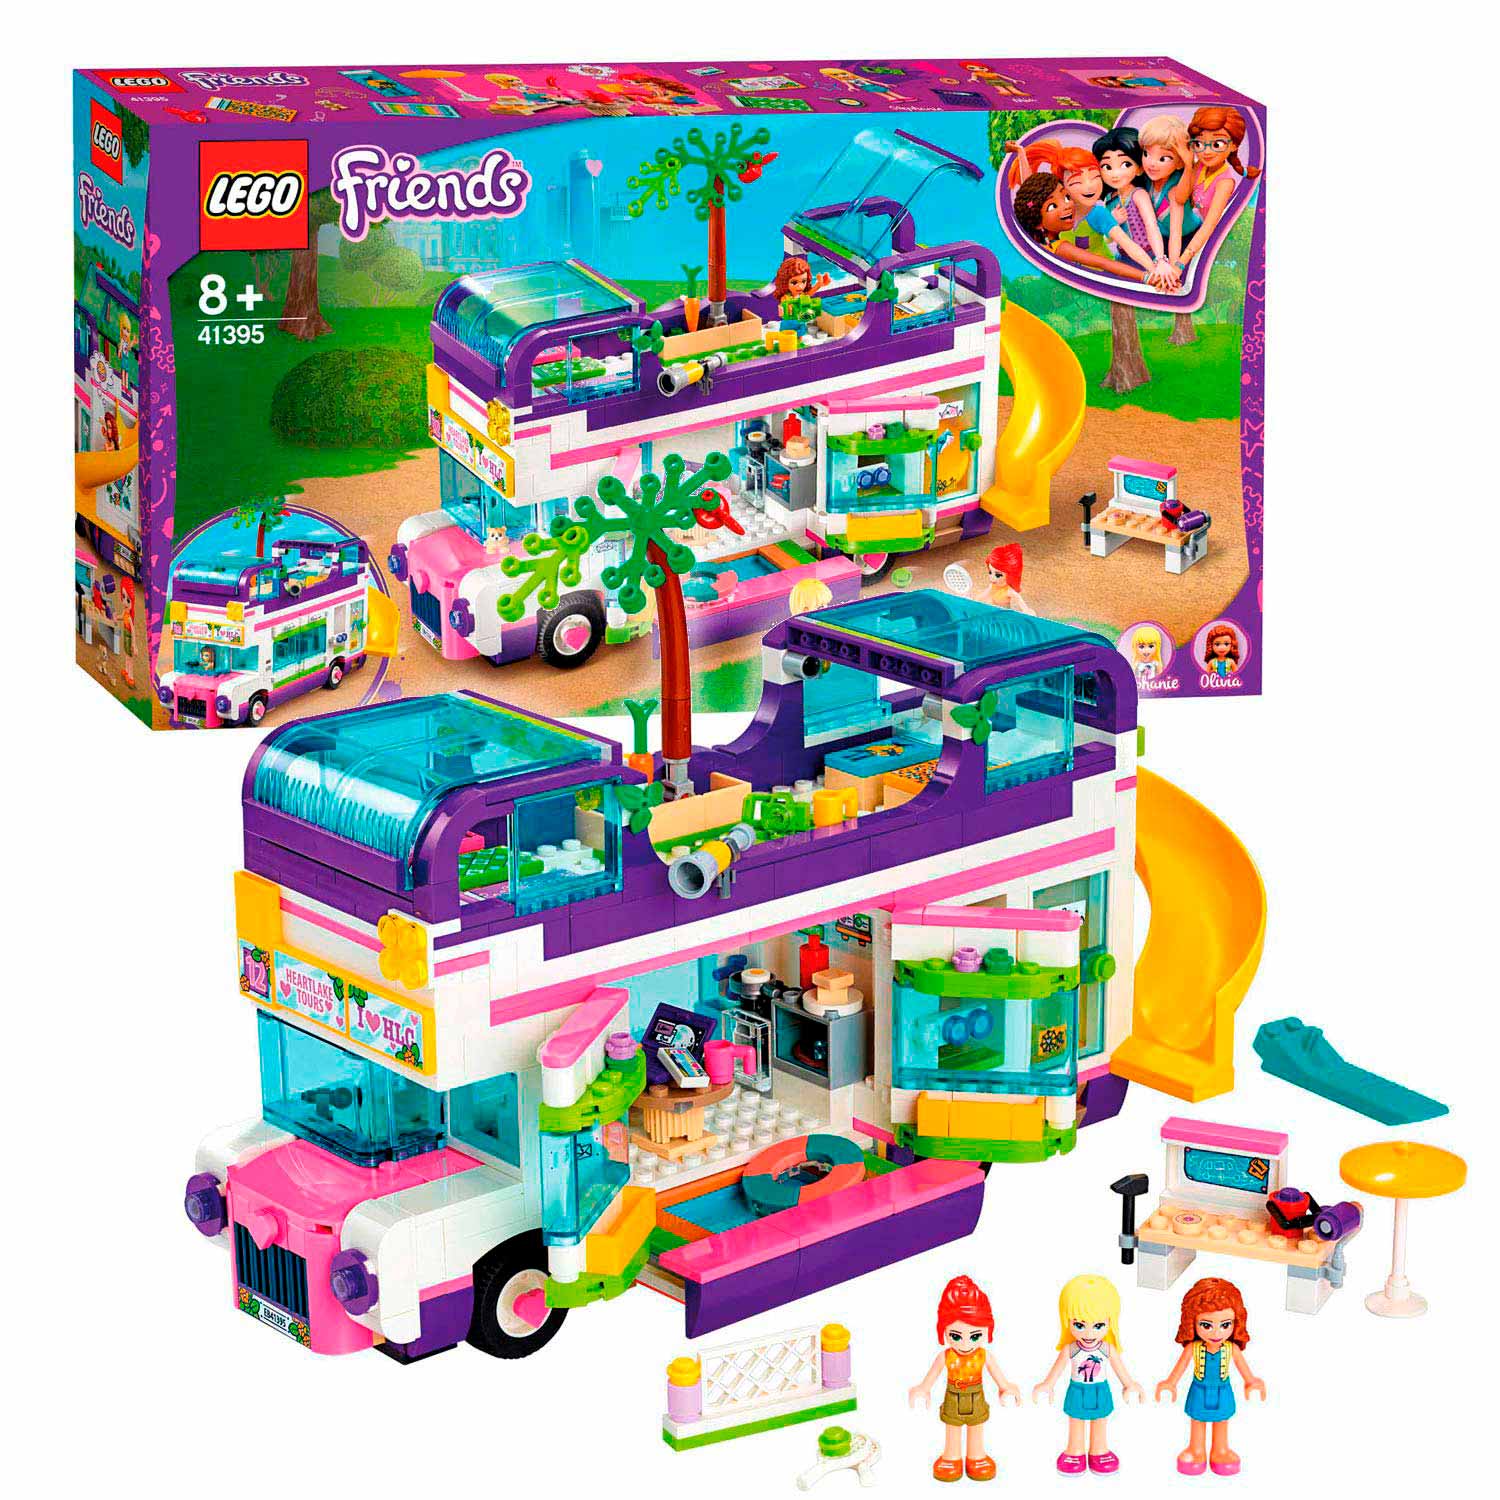 LEGO Friends 41395 Friendship bus Thimble Toys